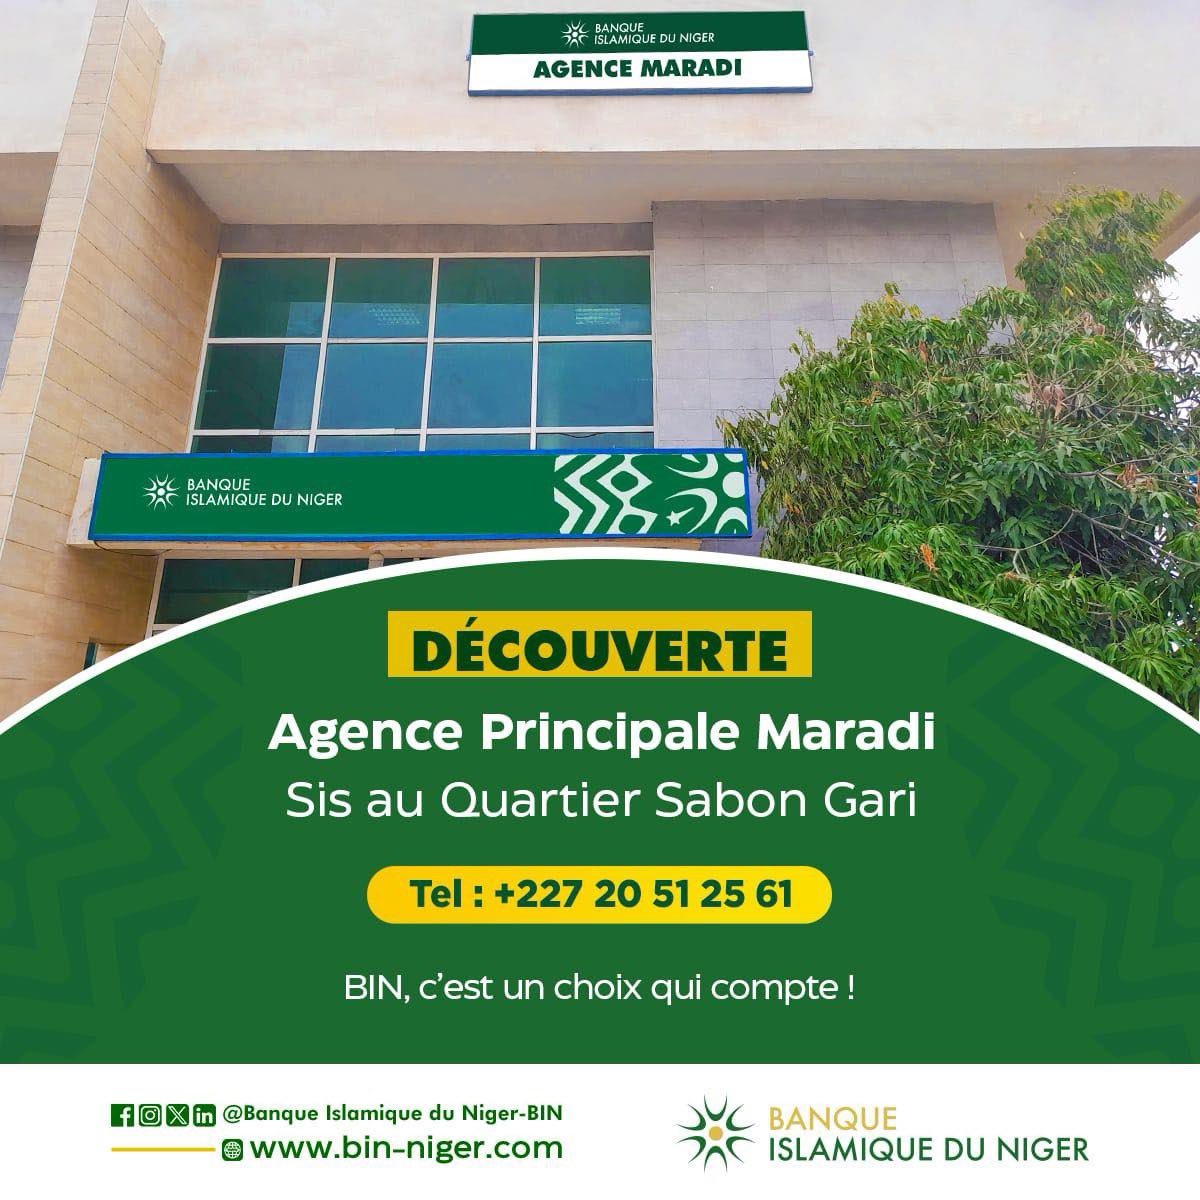 #decouverte 
Aujourd’hui dans notre rubrique #Découverte, nous partons à la découverte de notre Agence Principale de Maradi.

Elle est située sis au Quartier Sabon Gari!
Un accueil chaleureux vous attends😉.

#BanqueIslamiqueDuNiger #financeislamique  #BinNiger #banque #Niger